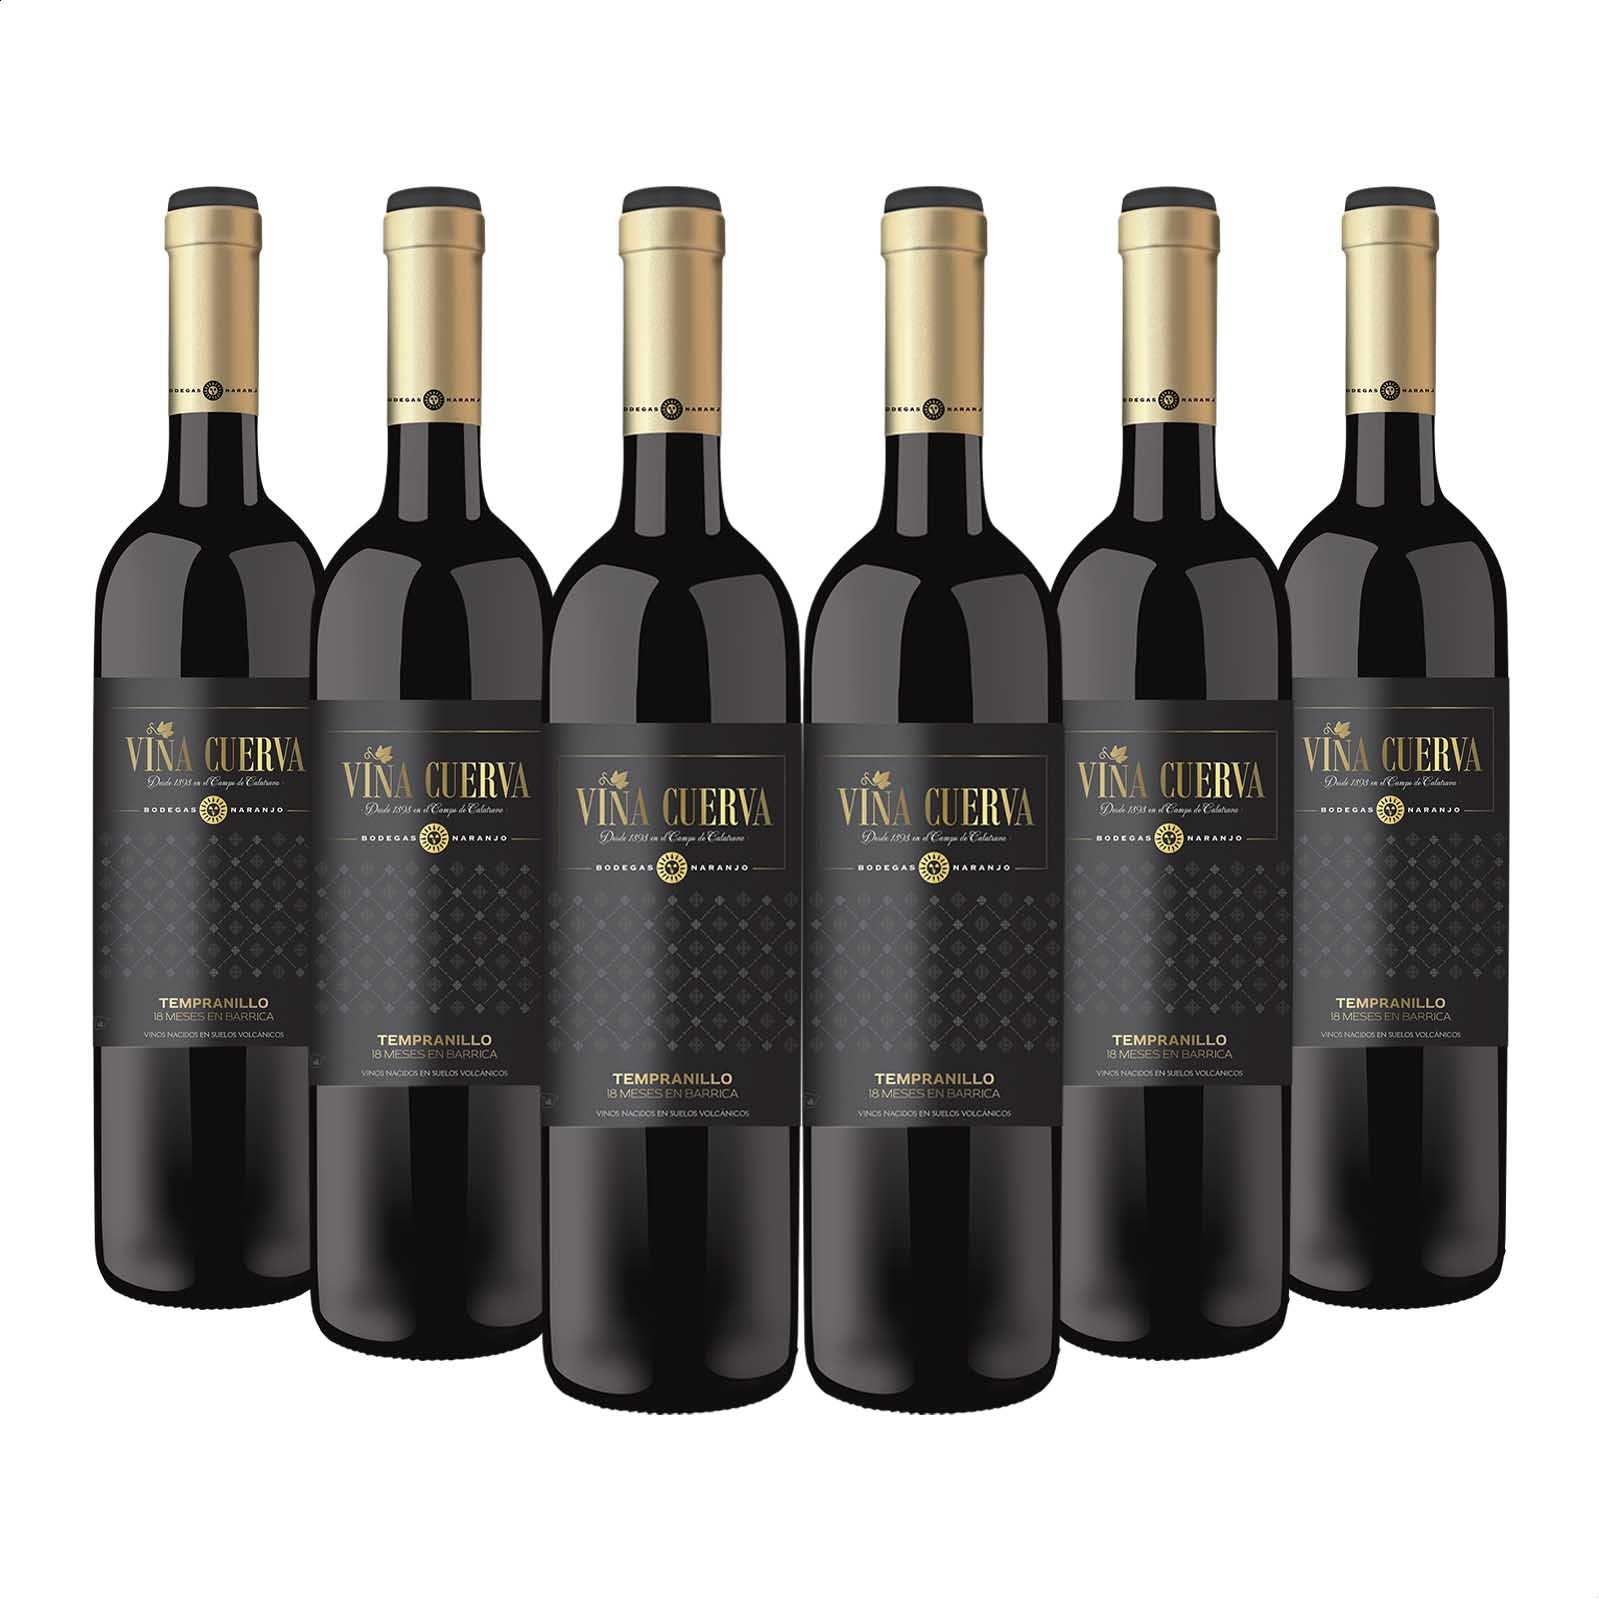 Bodegas Naranjo - Viña Cuerva vino tinto reserva IGP Tierra de Castilla del Campo de Calatrava 75cl, 6uds